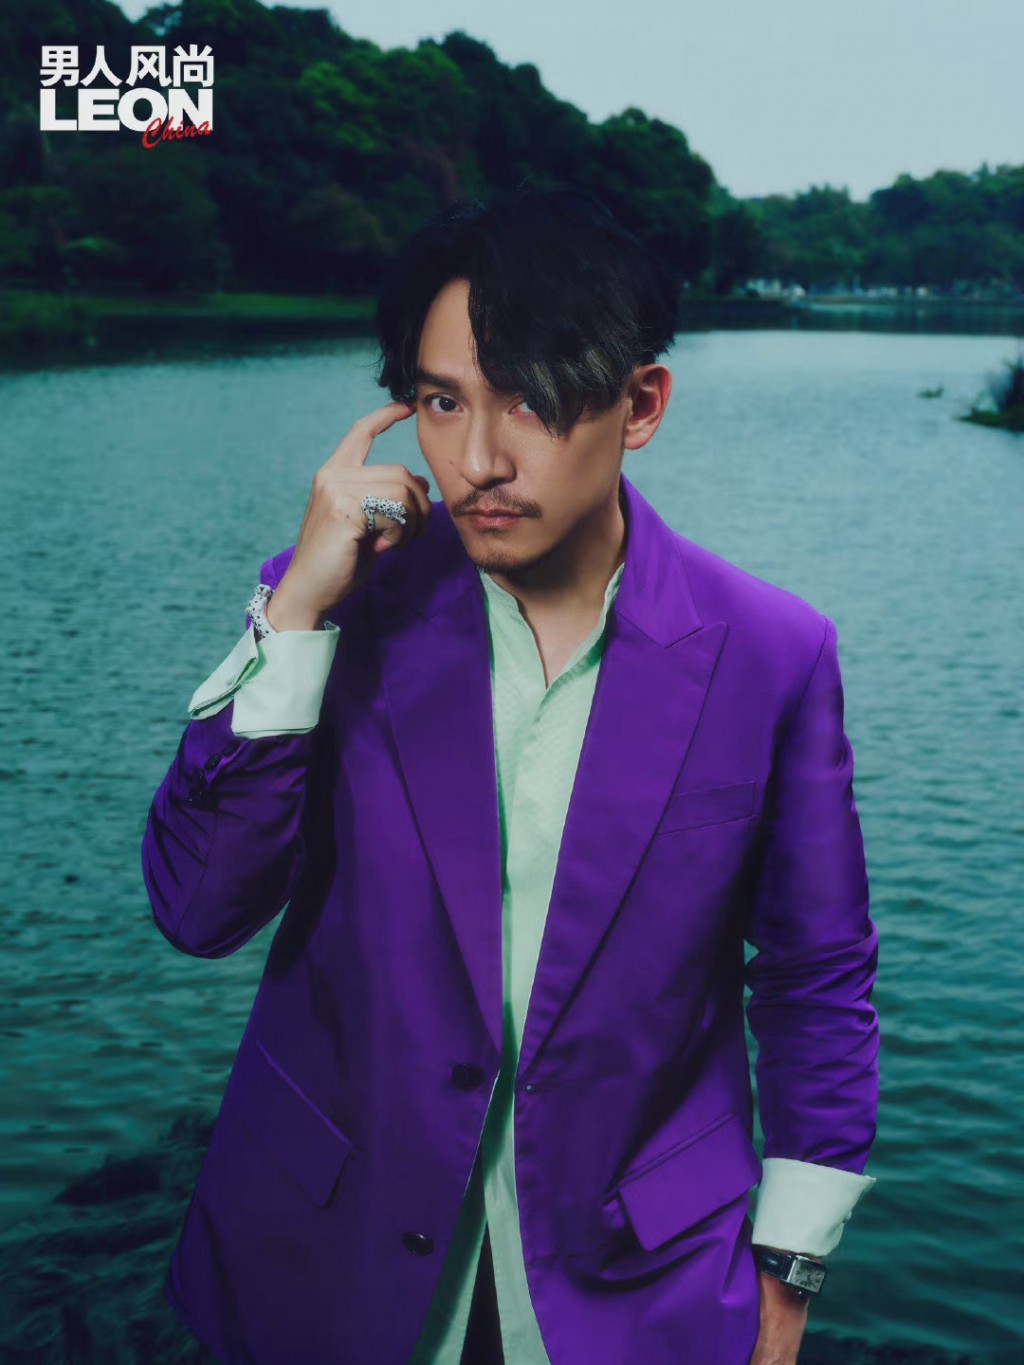 张震紫色西装造型型男魅力写真图片